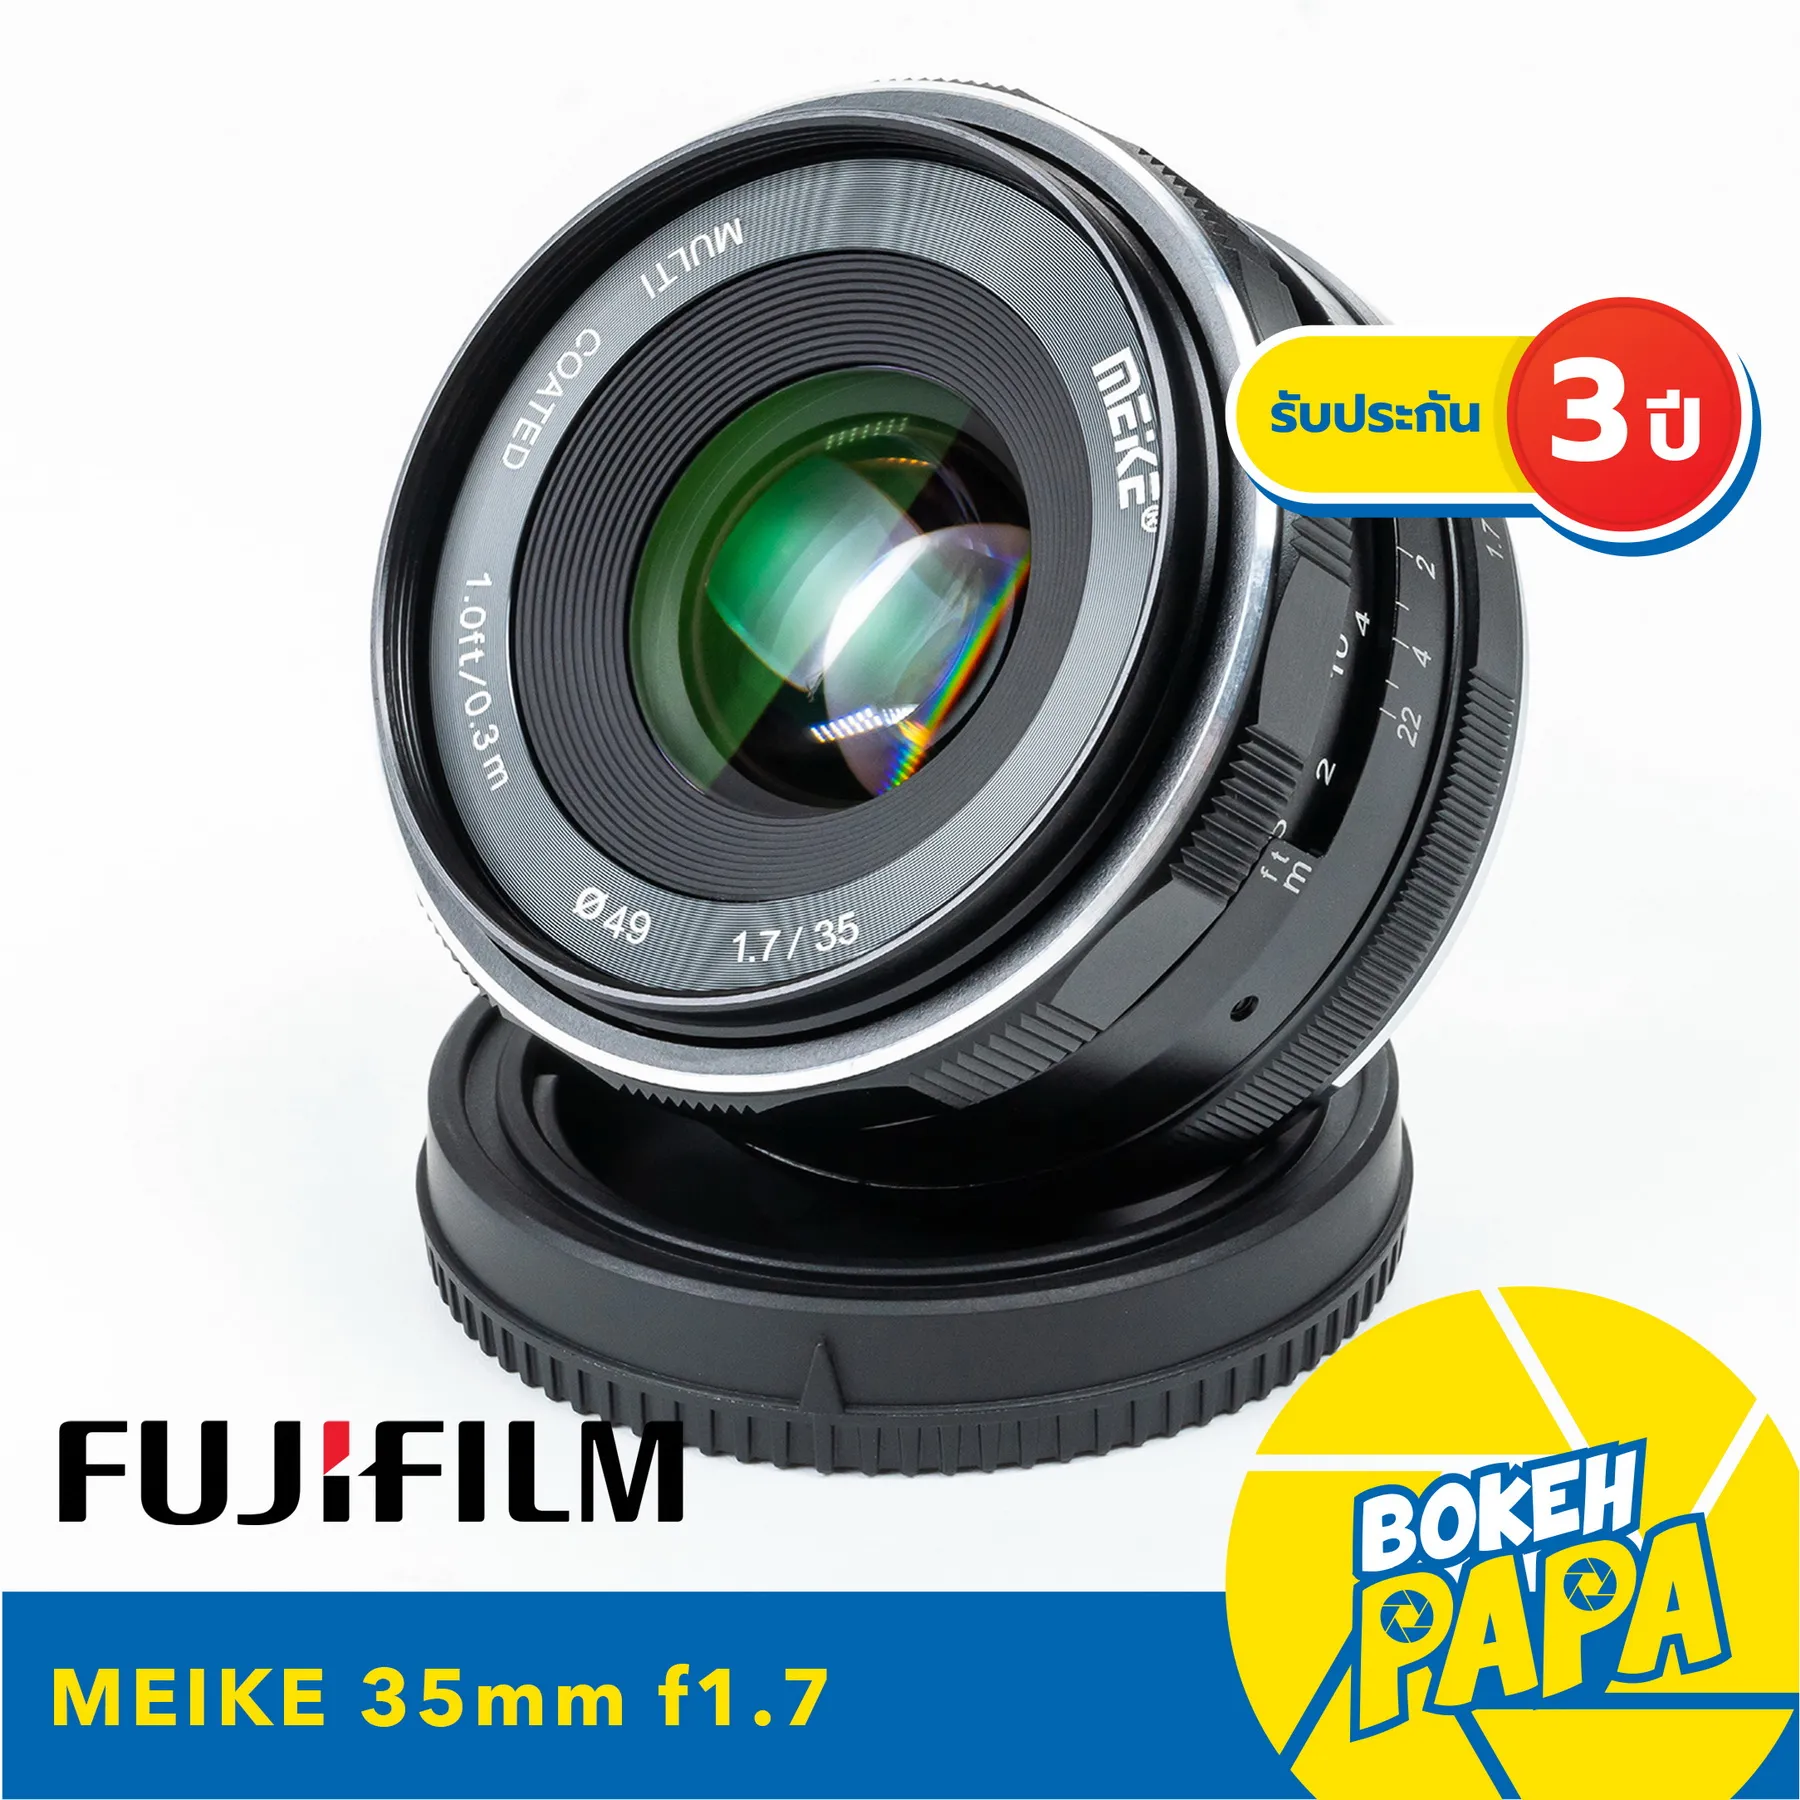 MEIKE 35mm F1.7 สำหรับใส่กล้อง Fuji Mirrorless ได้ทุกรุ่น เลนส์หน้าชัดหลังเบลอ ( เลนส์มือหมุน ) ( เลนส์ละลายหลัง ) ( Manual Focus ) ( สำหรับ กล้อง ฟูจิ ) ( 35 mm )